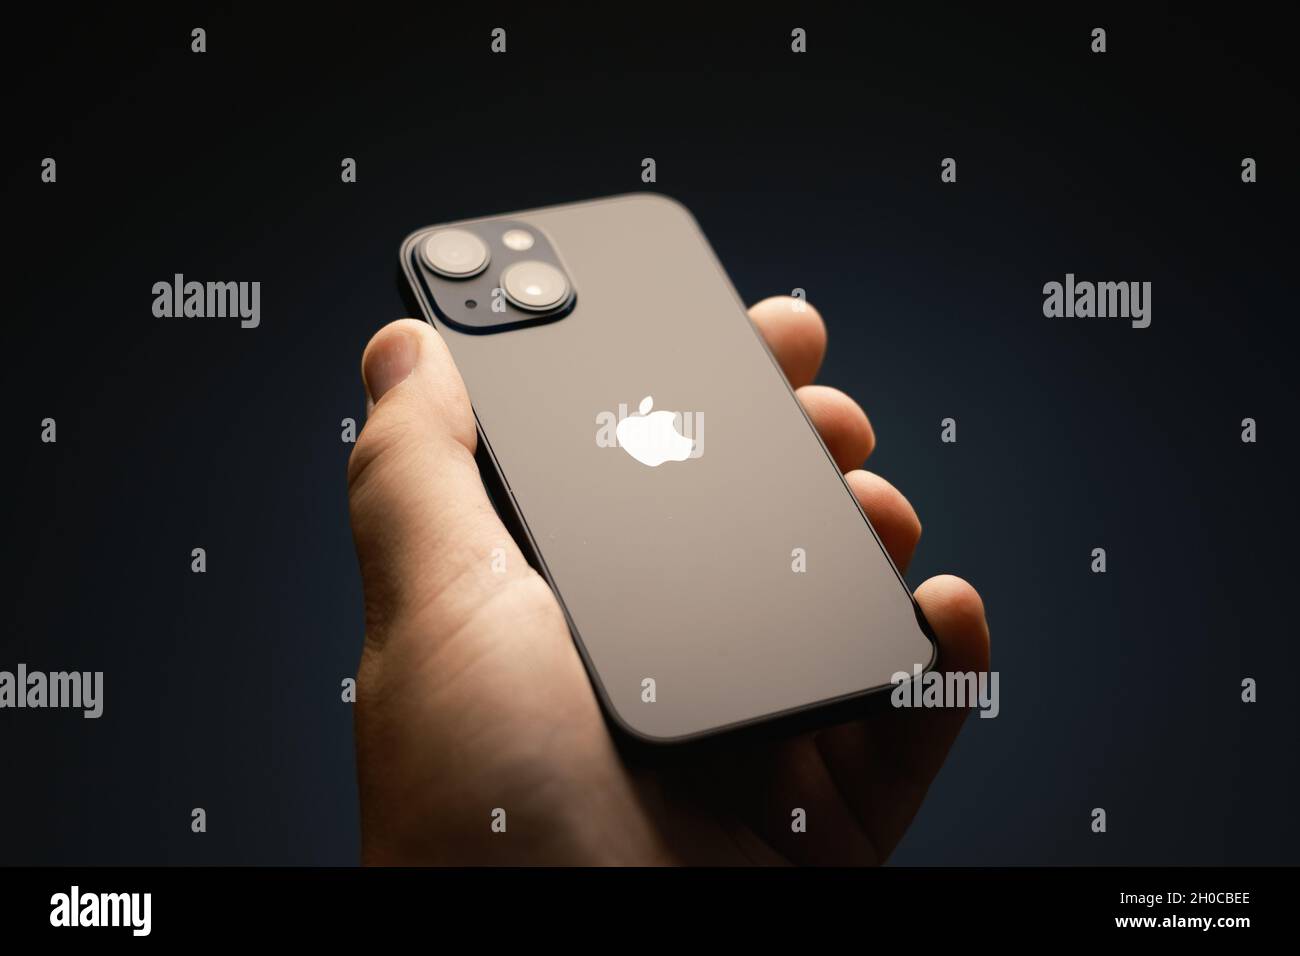 OCTOBRE 2021, RIGA, LETTONIE - le smartphone Apple iPhone 13 Mini 5G récemment lancé est exposé à des fins éditoriales.Effet de mise au point peu profonde. Banque D'Images